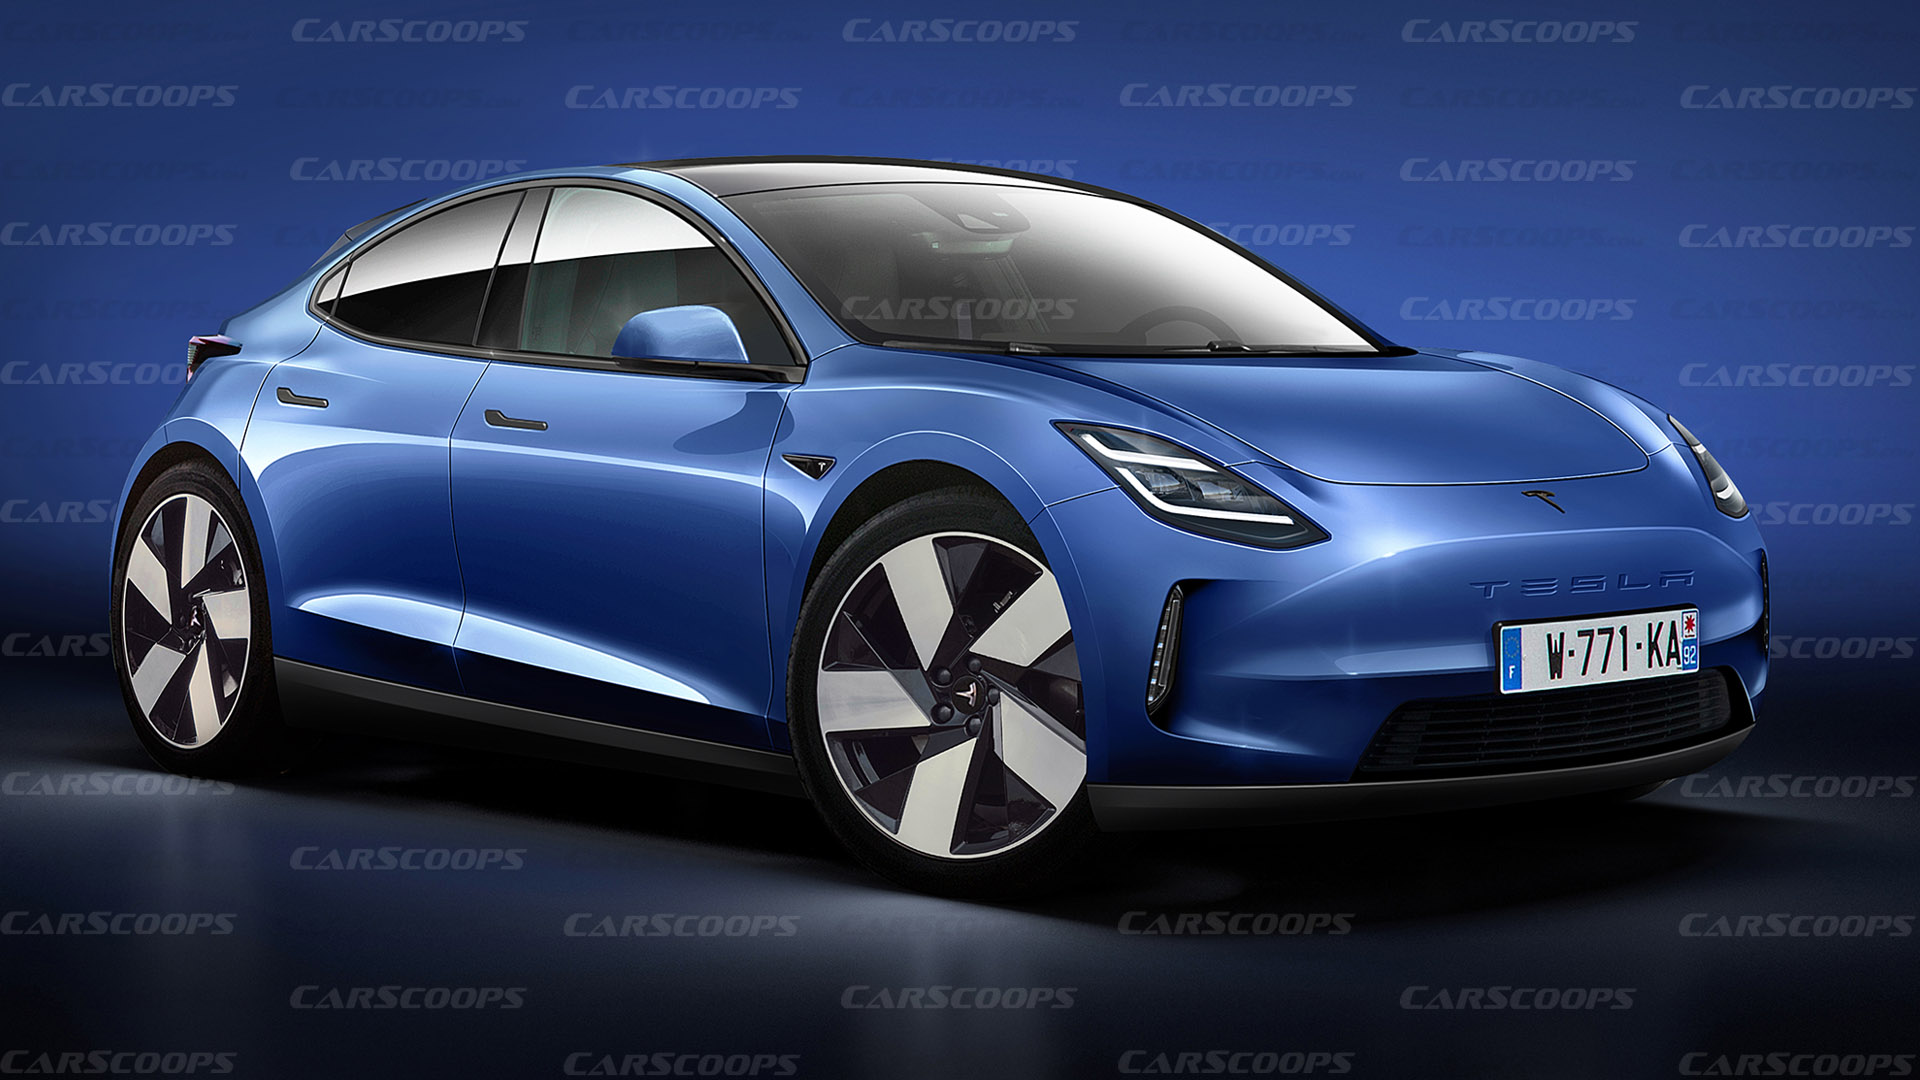 Tesla sắp có xe điện với giá quy đổi dưới 600 triệu: VinFast, Toyota và Volkwagen đều cần lưu tâm - Ảnh 1.